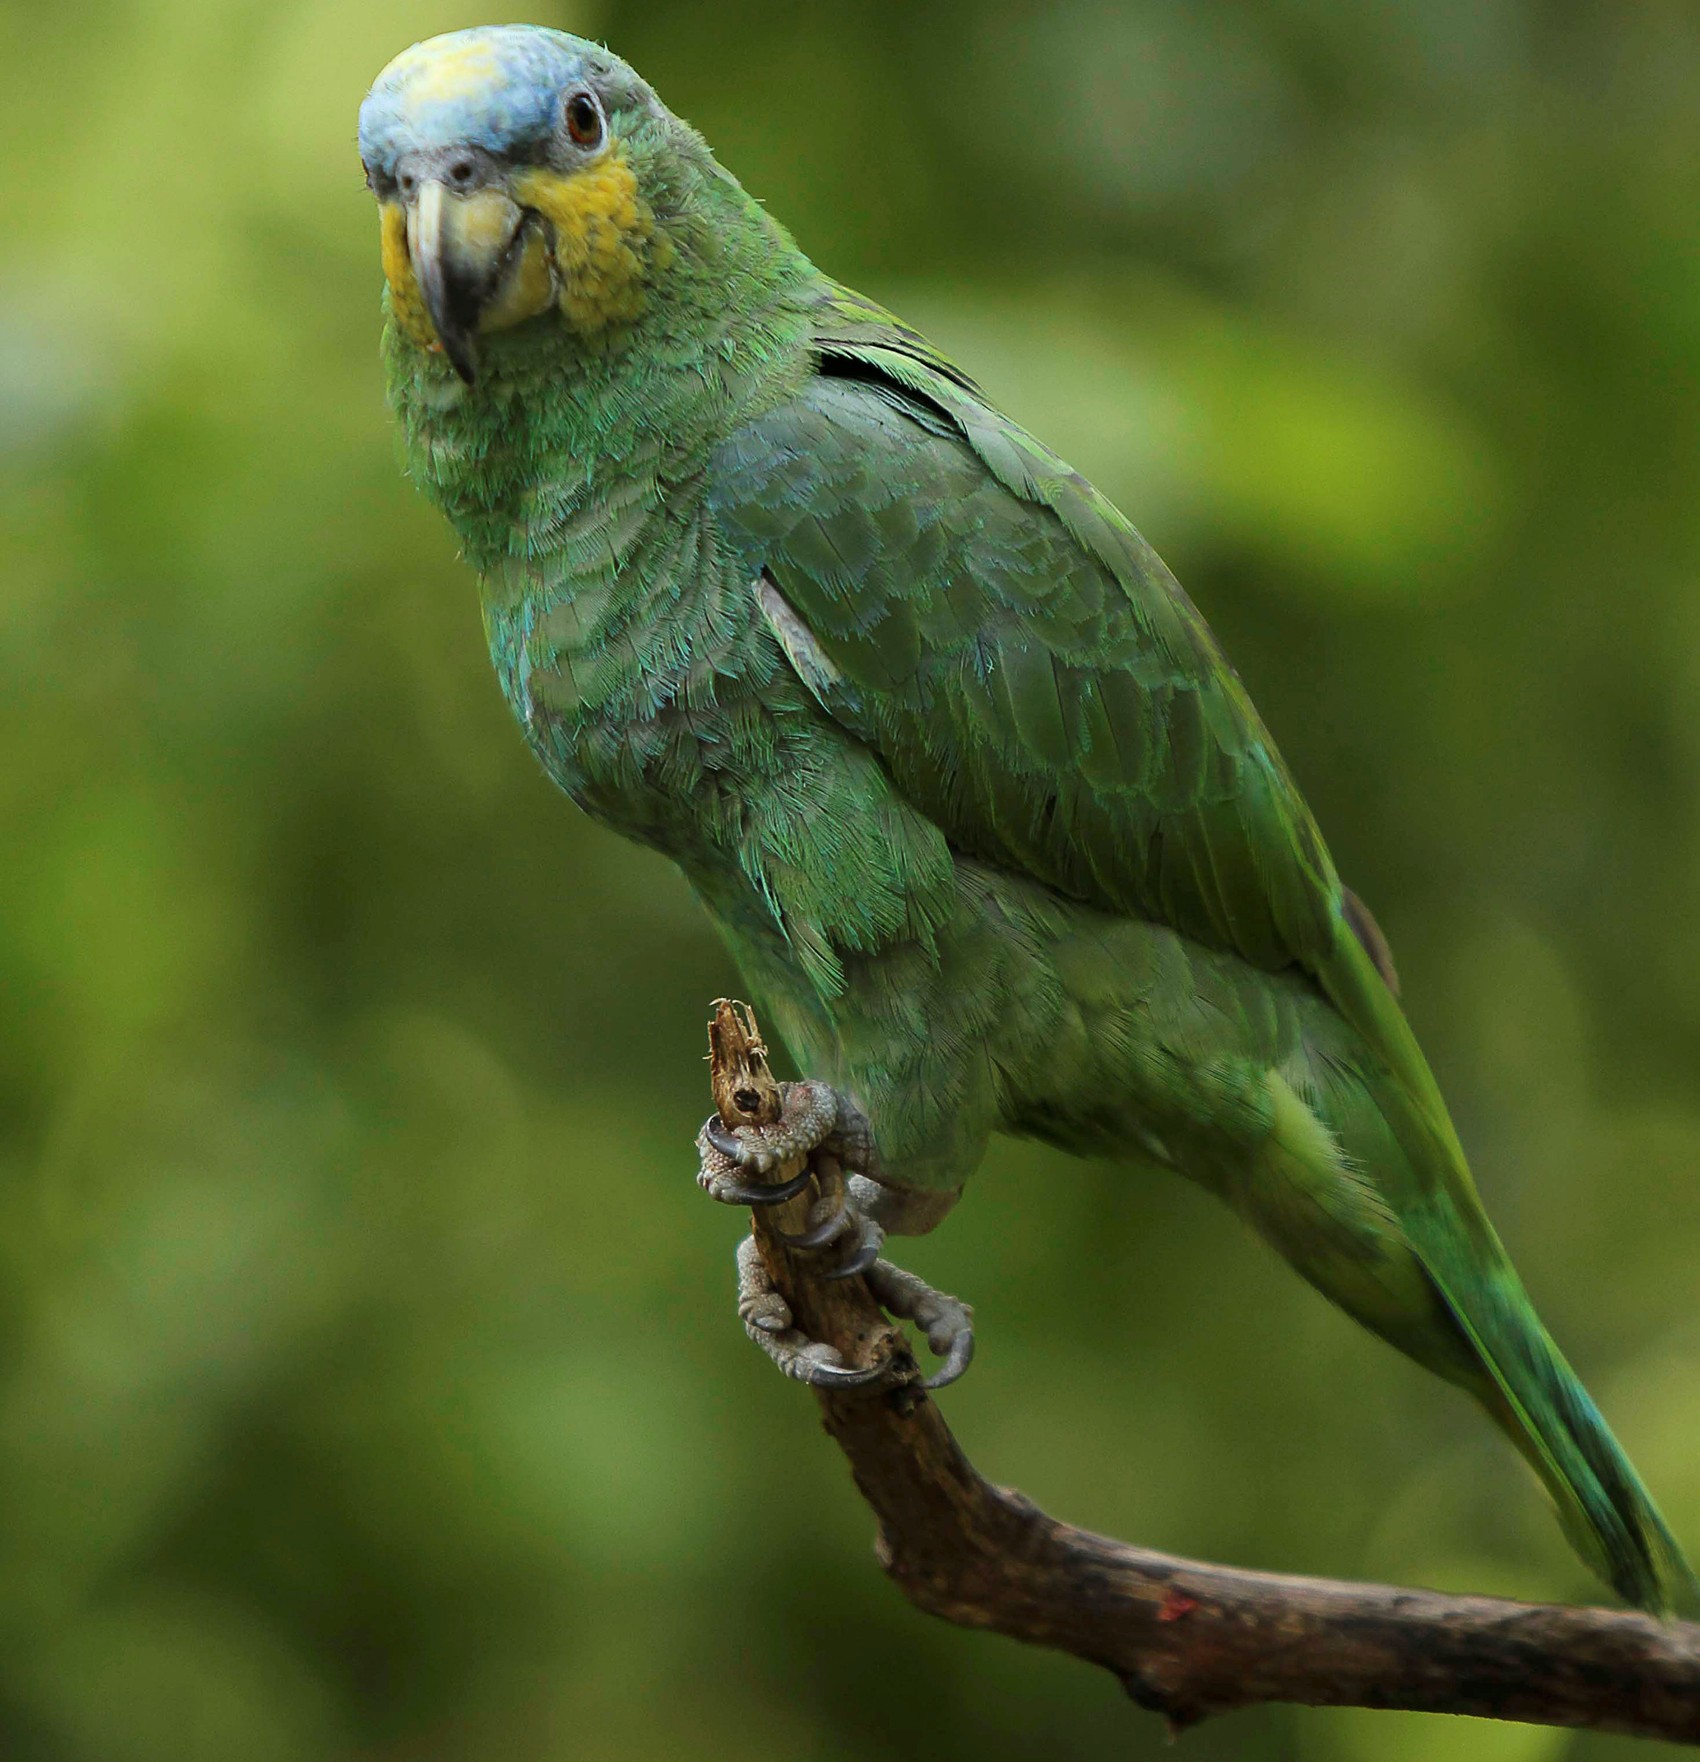   Papagaio-verde é visto em parque ecológico, em foto de 8 de outubro (Foto: Reuters/Guillermo Granja)